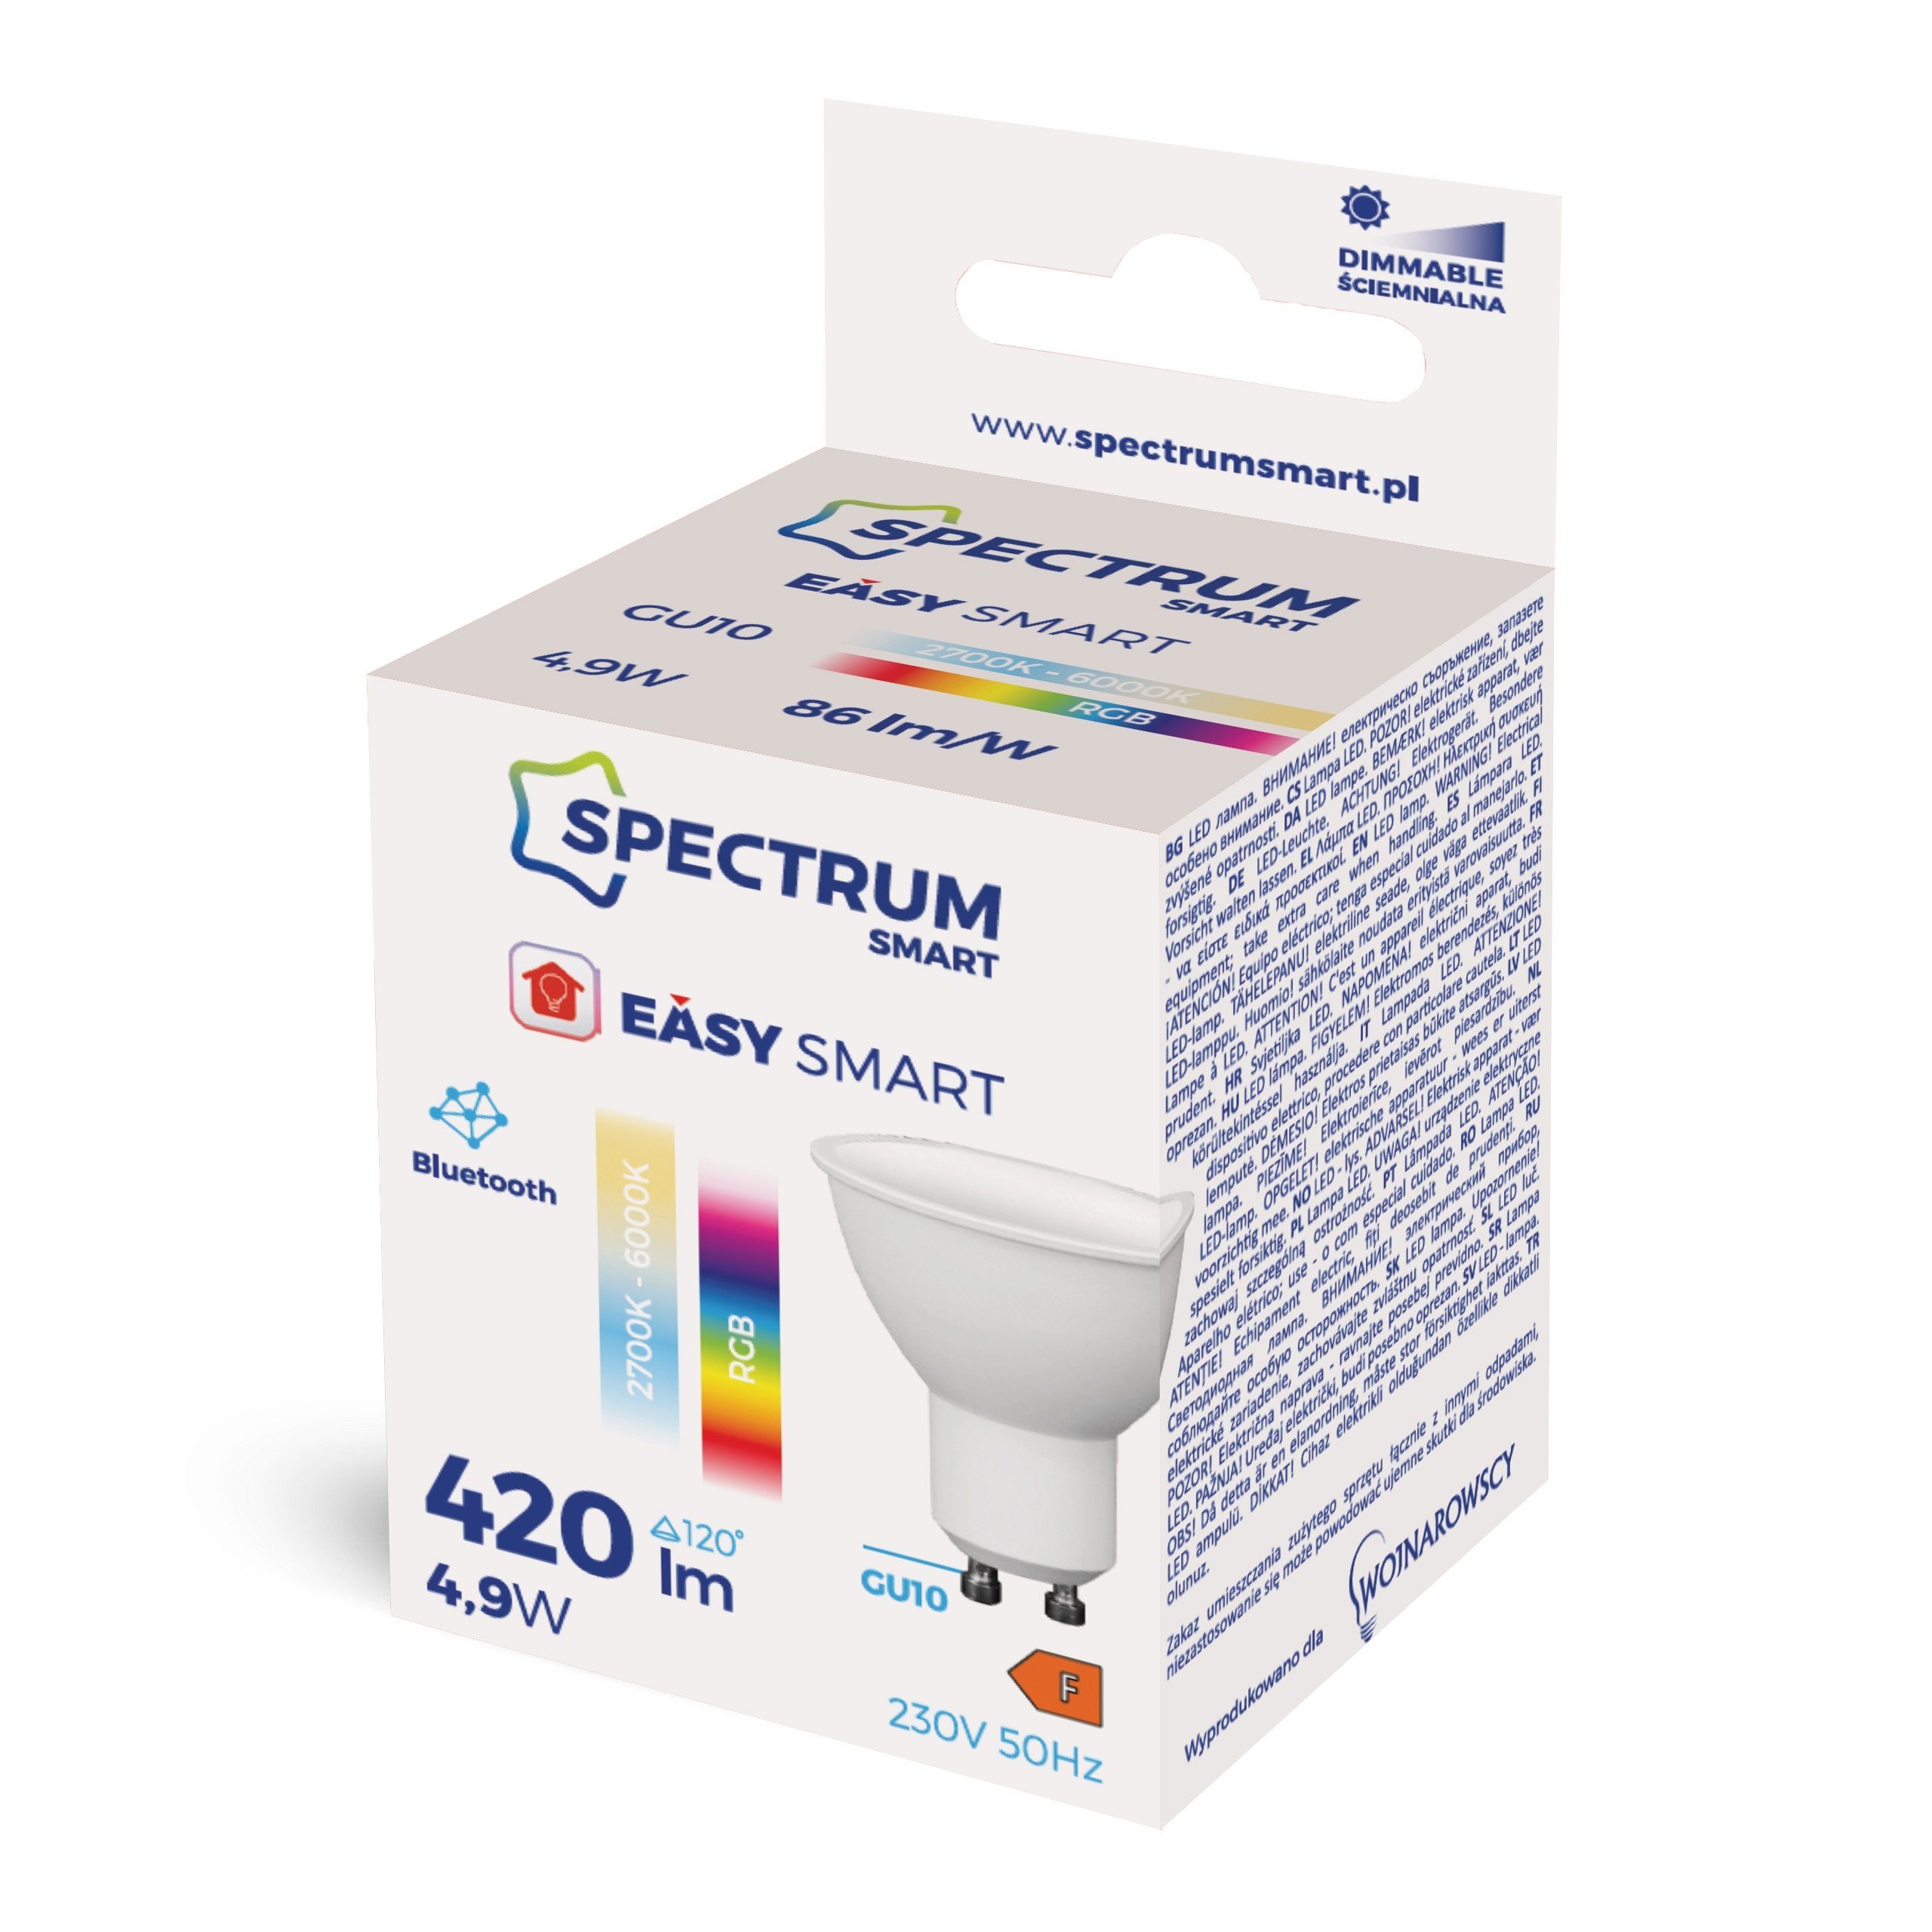 Spectrum SMART tageslichtweiß, Farbwechsler, APP LED-Leuchtmittel BLUETOOTH 4,9W bis RGB LED GU10, CCT-Farbtemperatursteuerung 420lm DIMMBAR, GU10 warmweiß 2700K-6000K - bunt SMART EASY